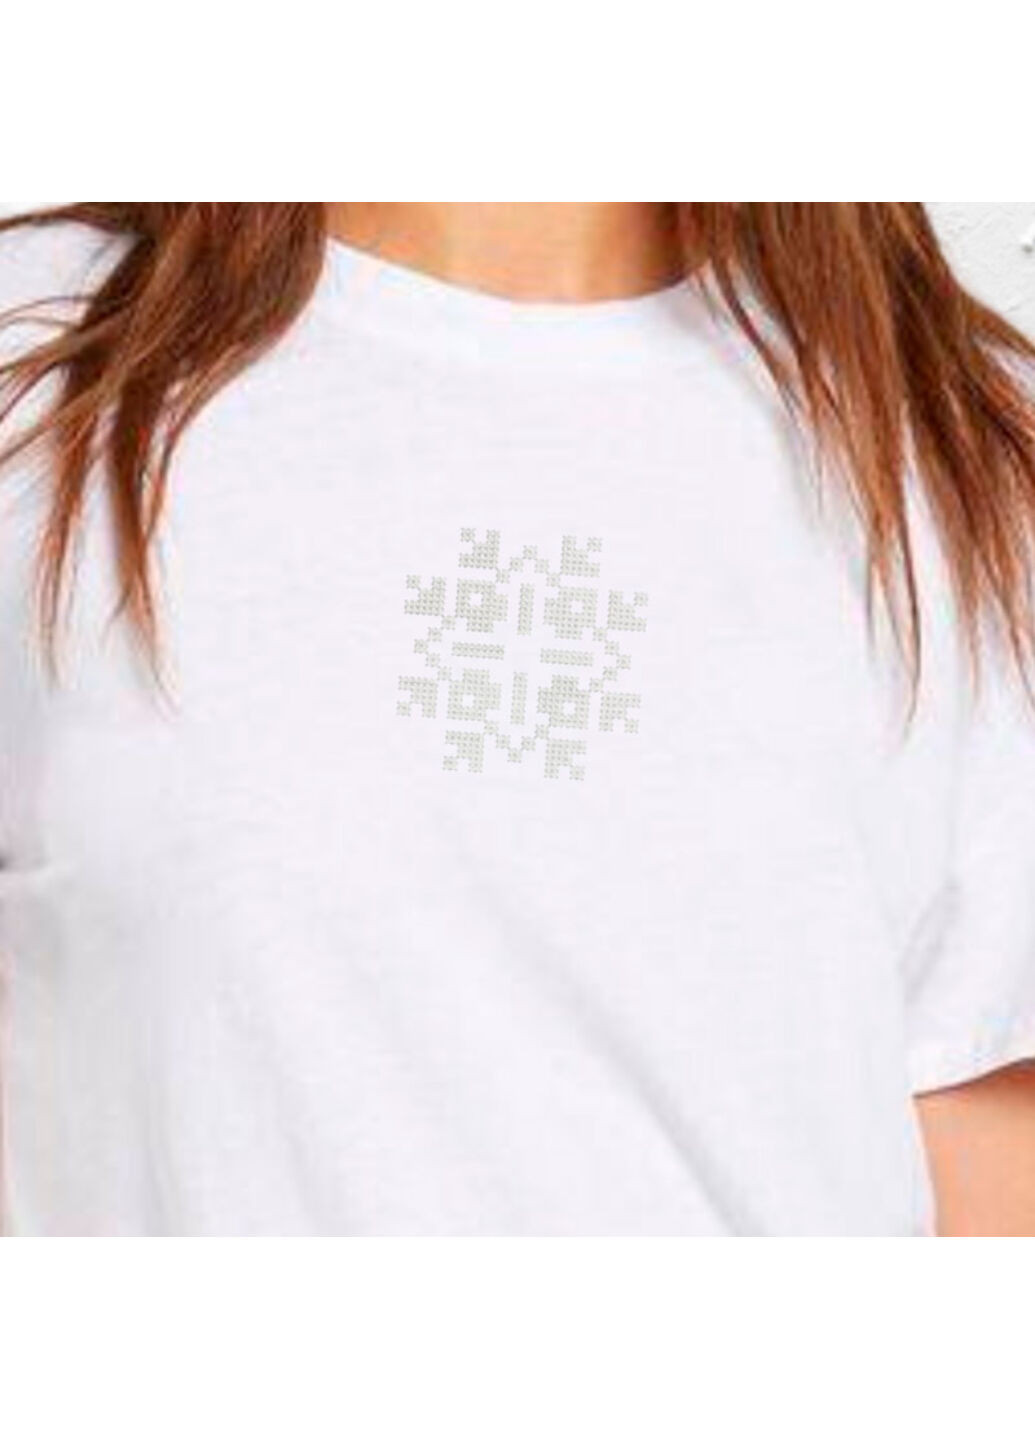 Біла футболка етно з вишивкою 02-11 жіноча білий xl No Brand